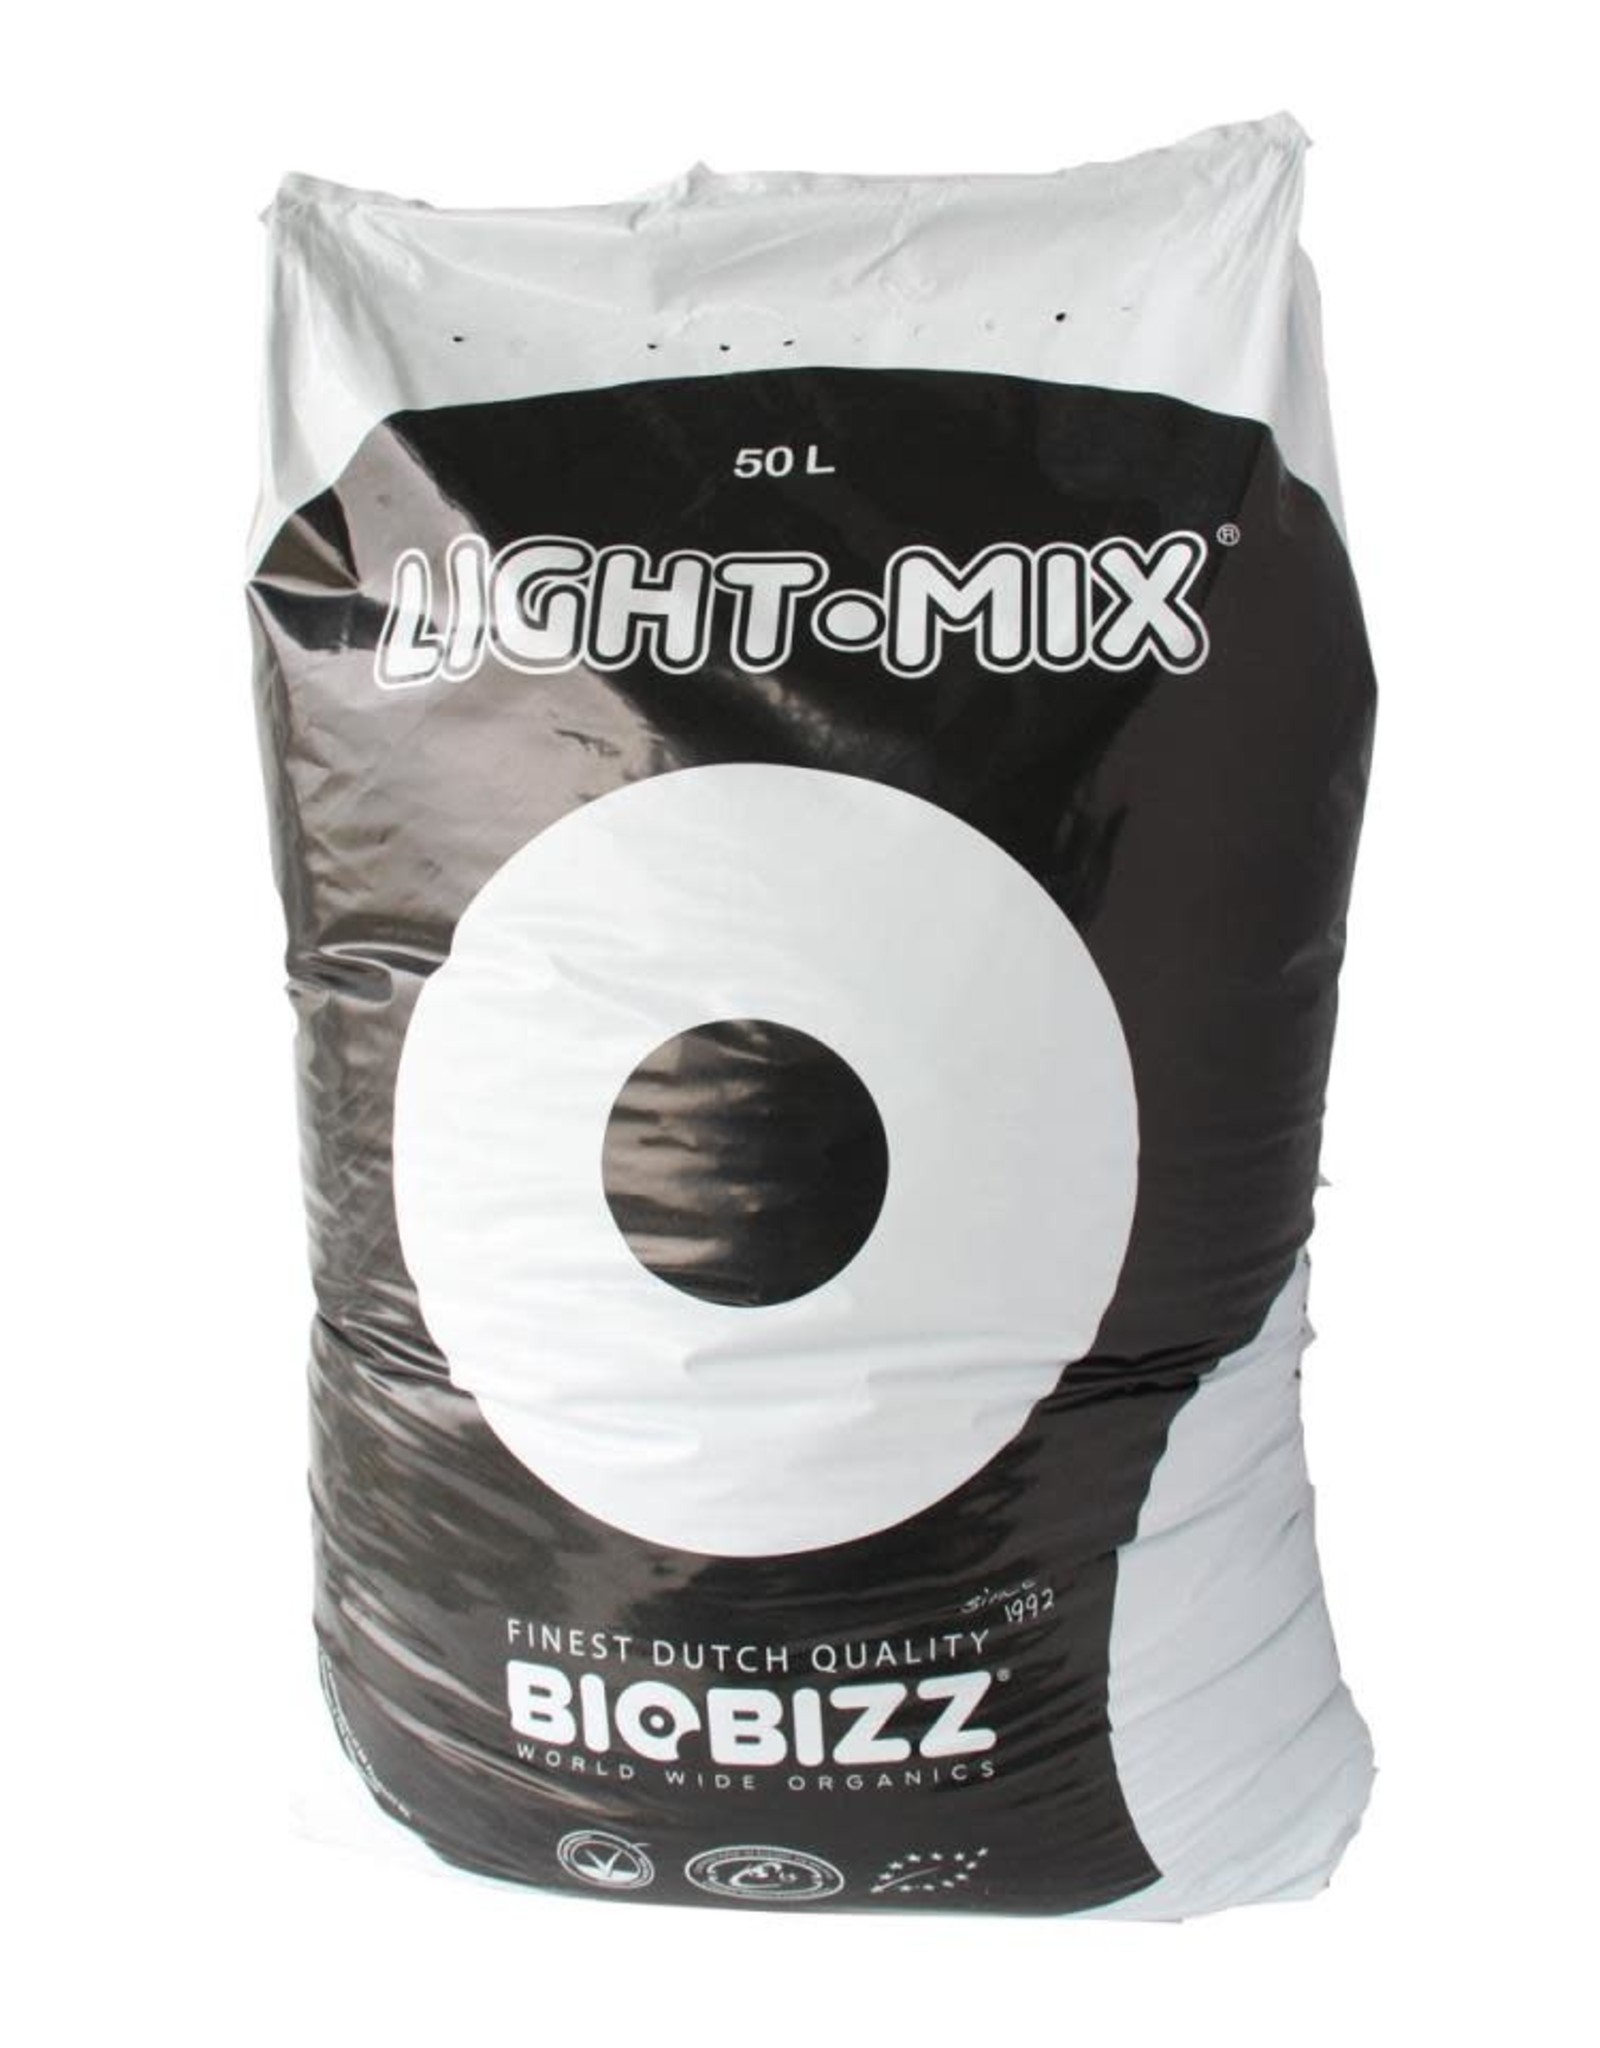 Biobizz Biobizz Light-Mix, 50 L